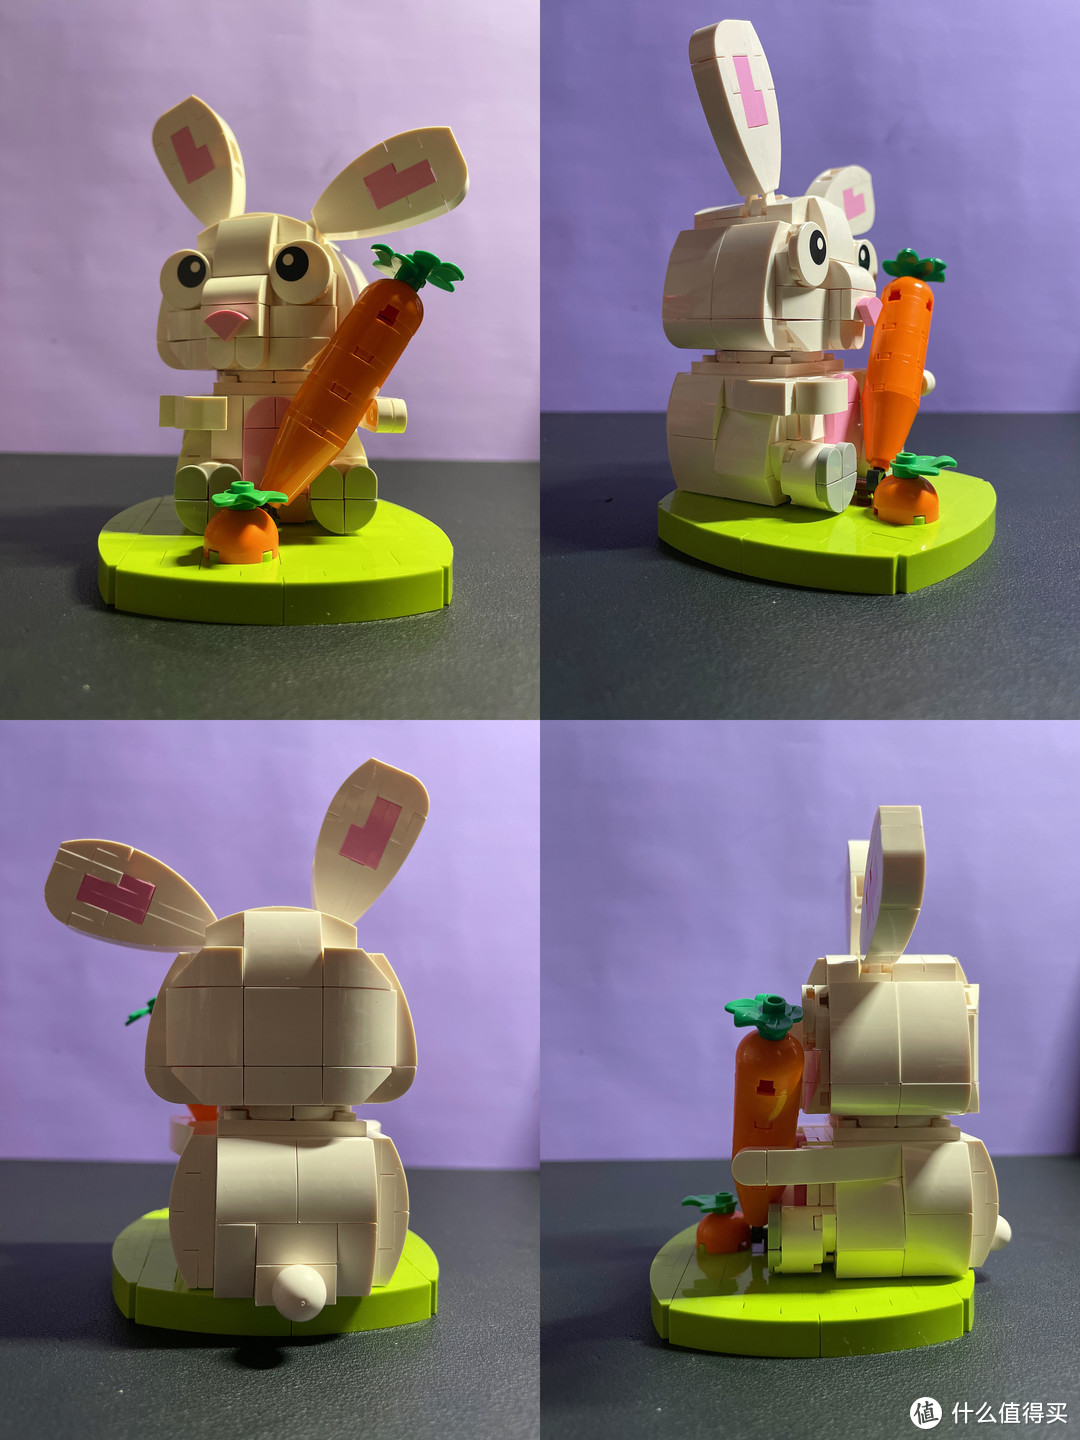 酷玩潮 福兔贺岁、赤兔瑞至贺岁积木拼装体验分享。